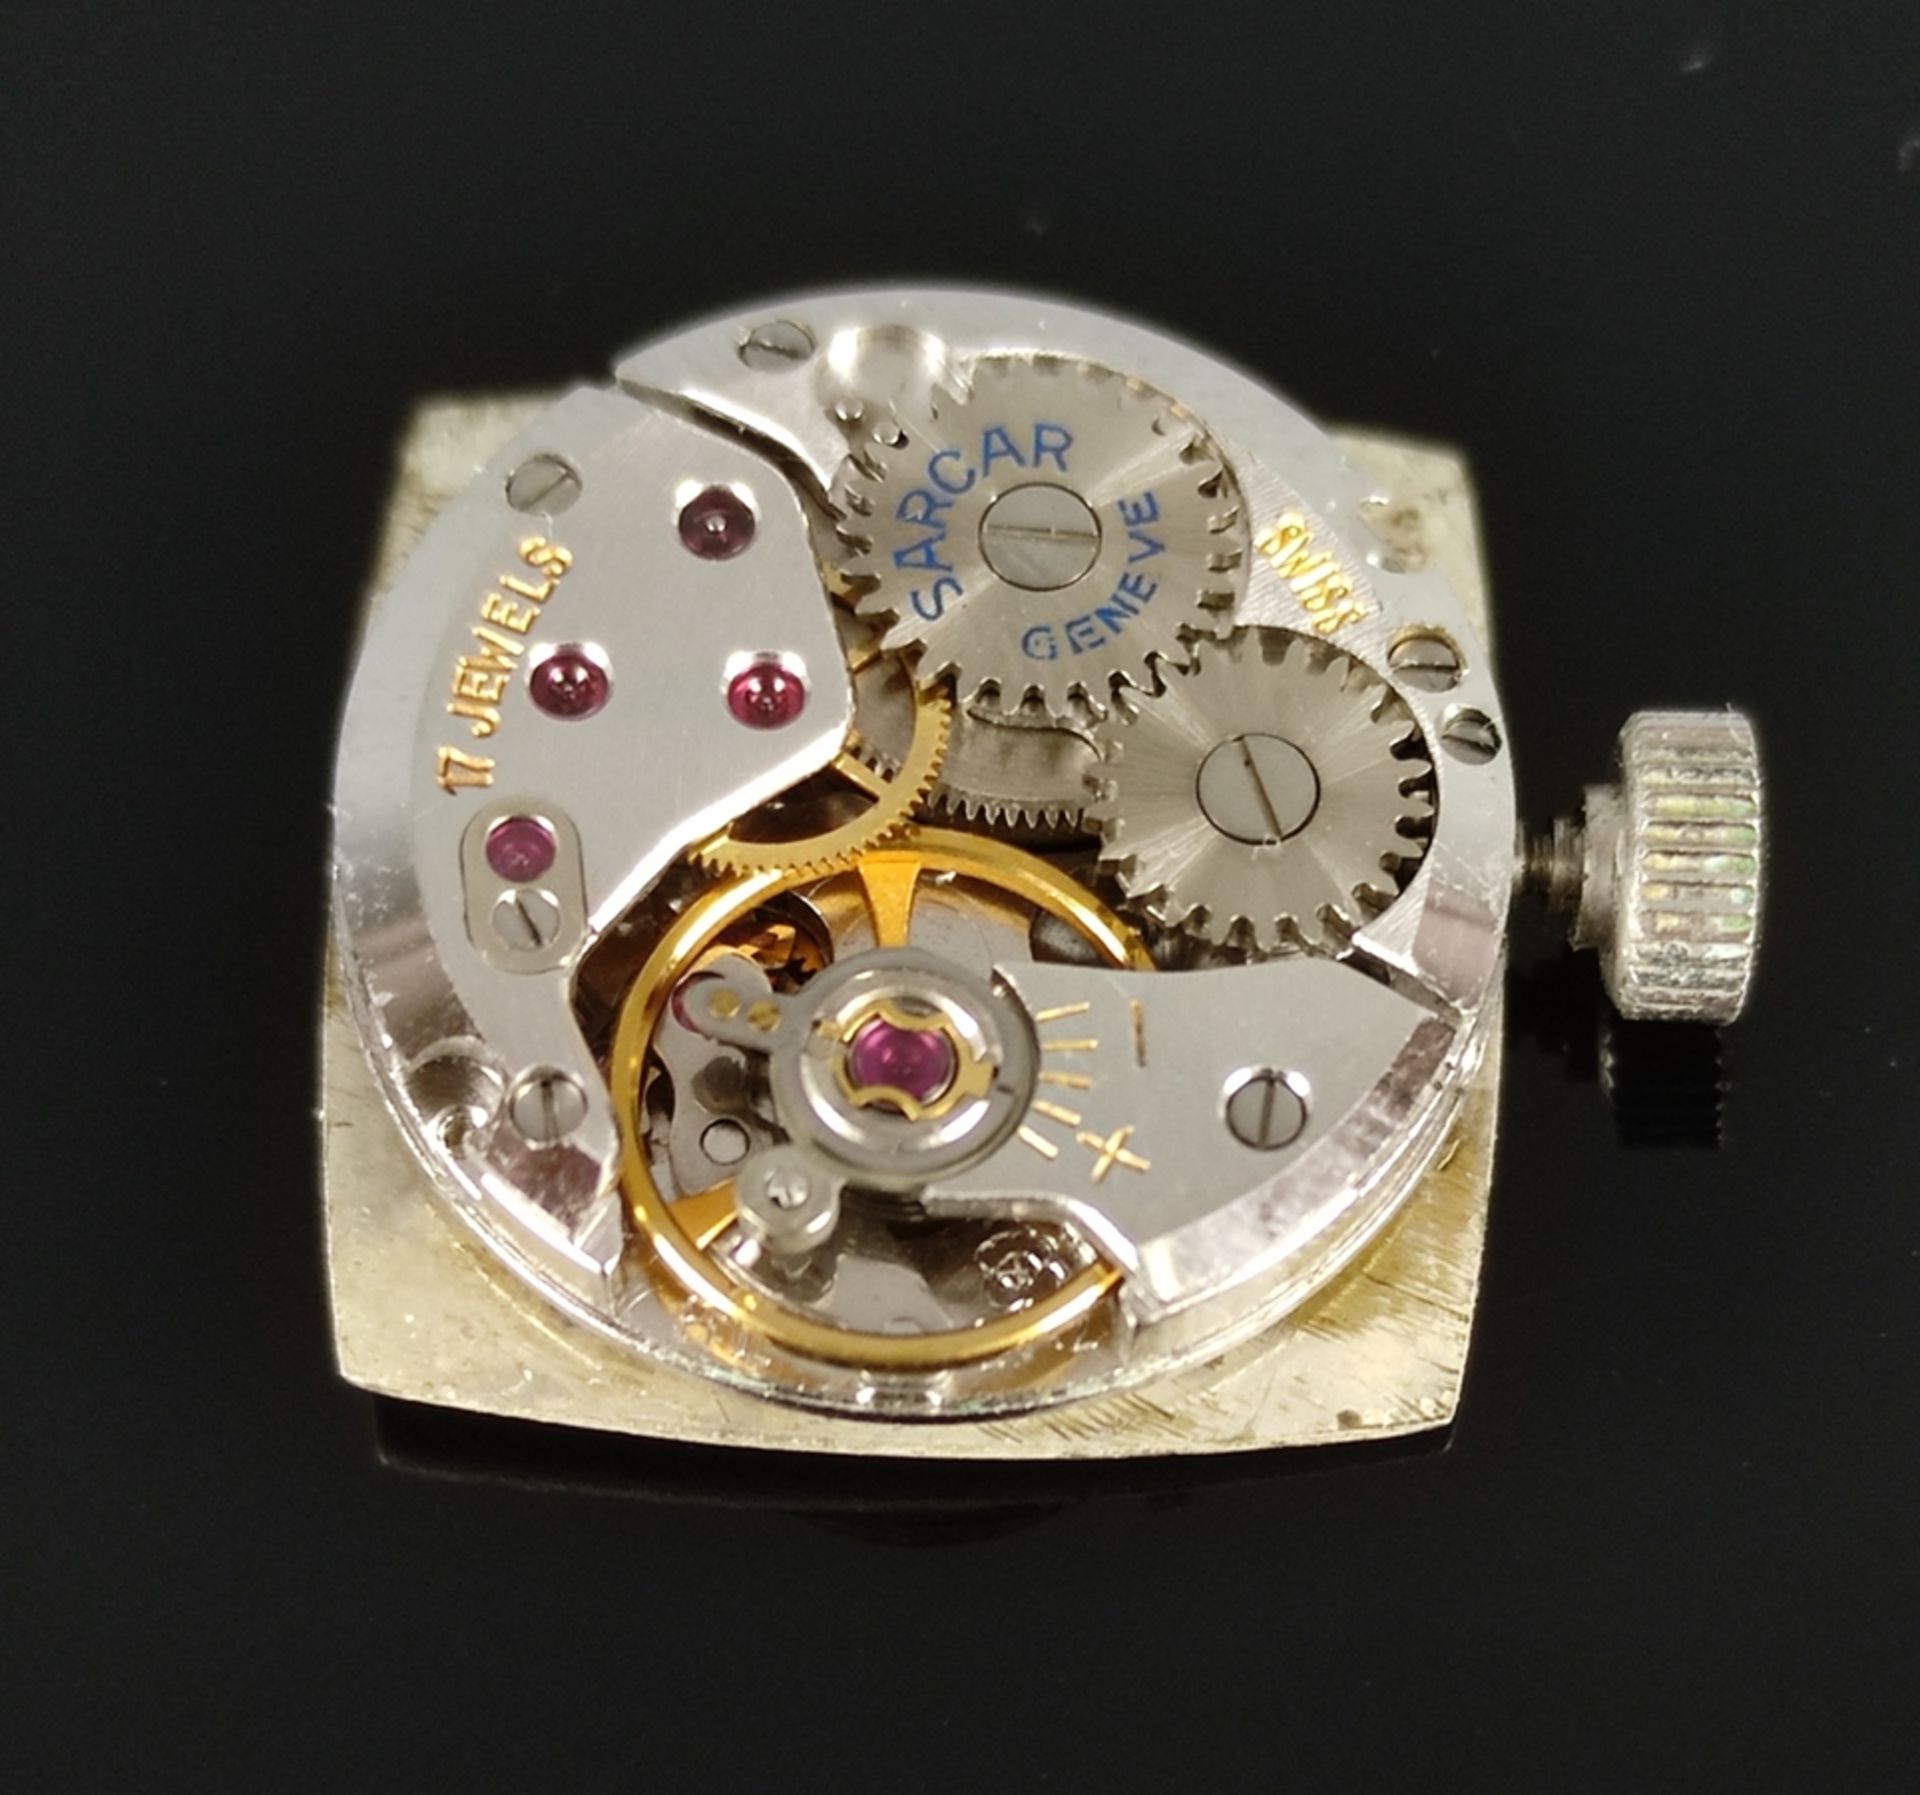 Armbanduhr, Sarcar Geneve / Genf, rechteckiges Gehäuse, 21,4x21,4mm, Lünette besetzt mit 31 Brillan - Bild 7 aus 8